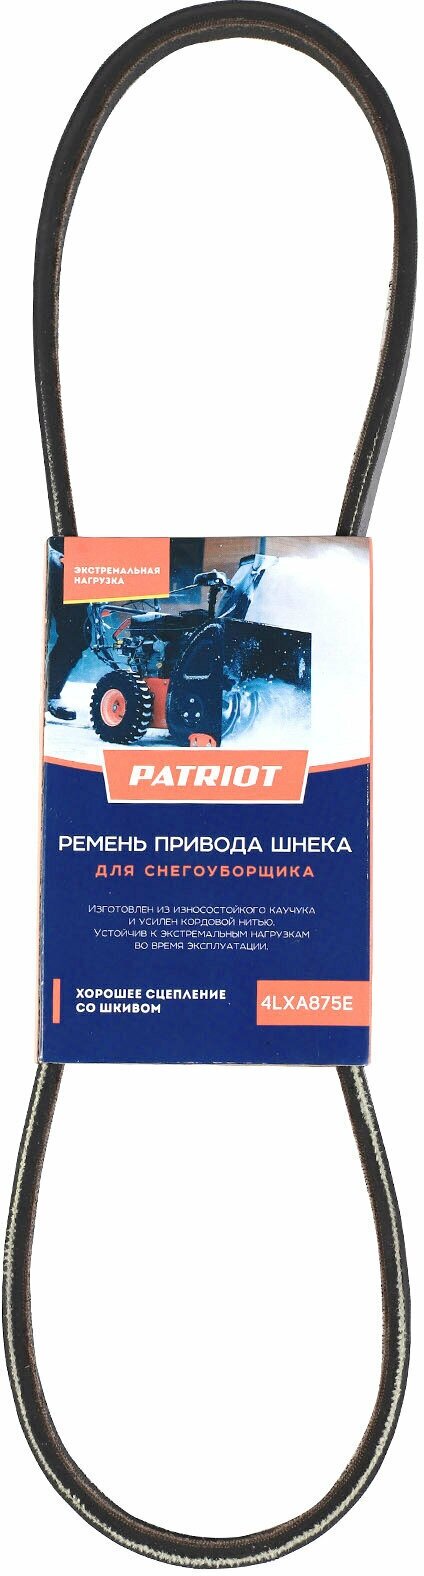 Ремень PATRIOT 4LXA875E привода шнека для снегоуборщика PS 911, PS 917